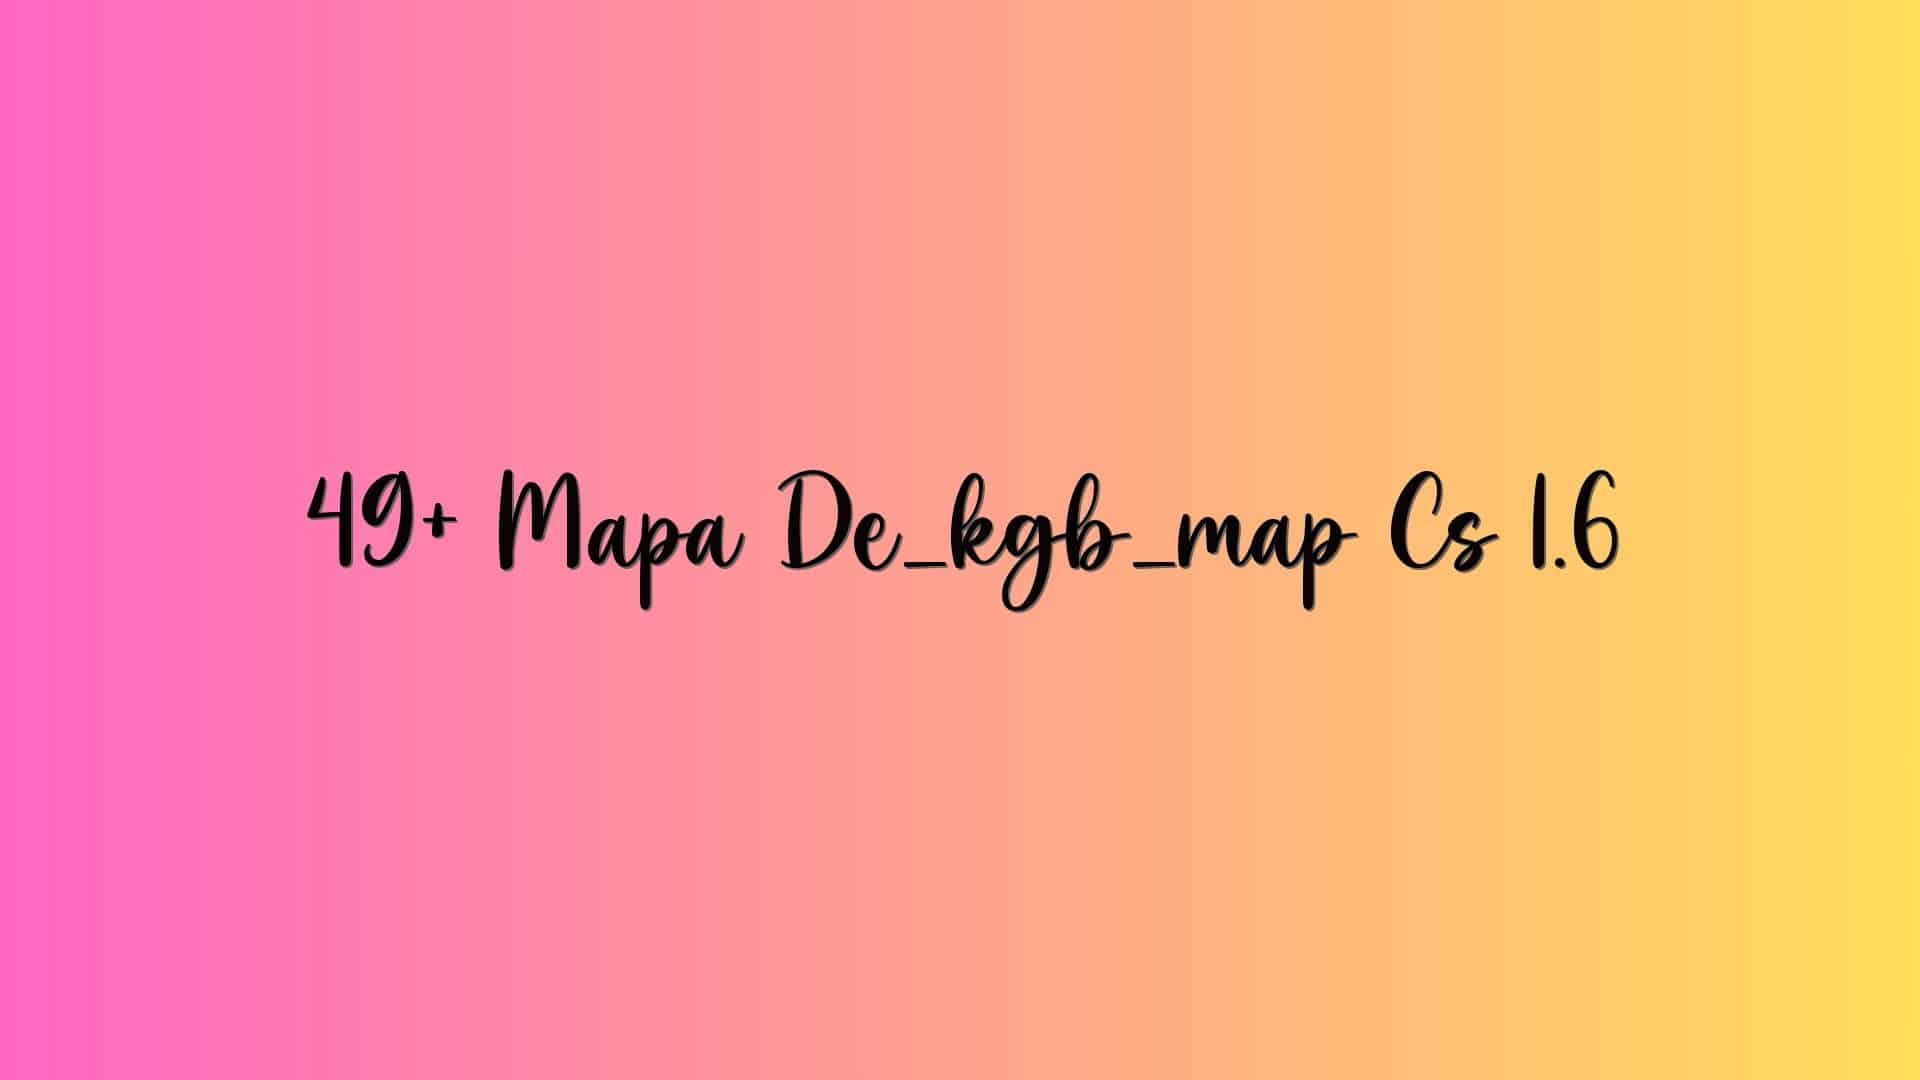 49+ Mapa De_kgb_map Cs 1.6